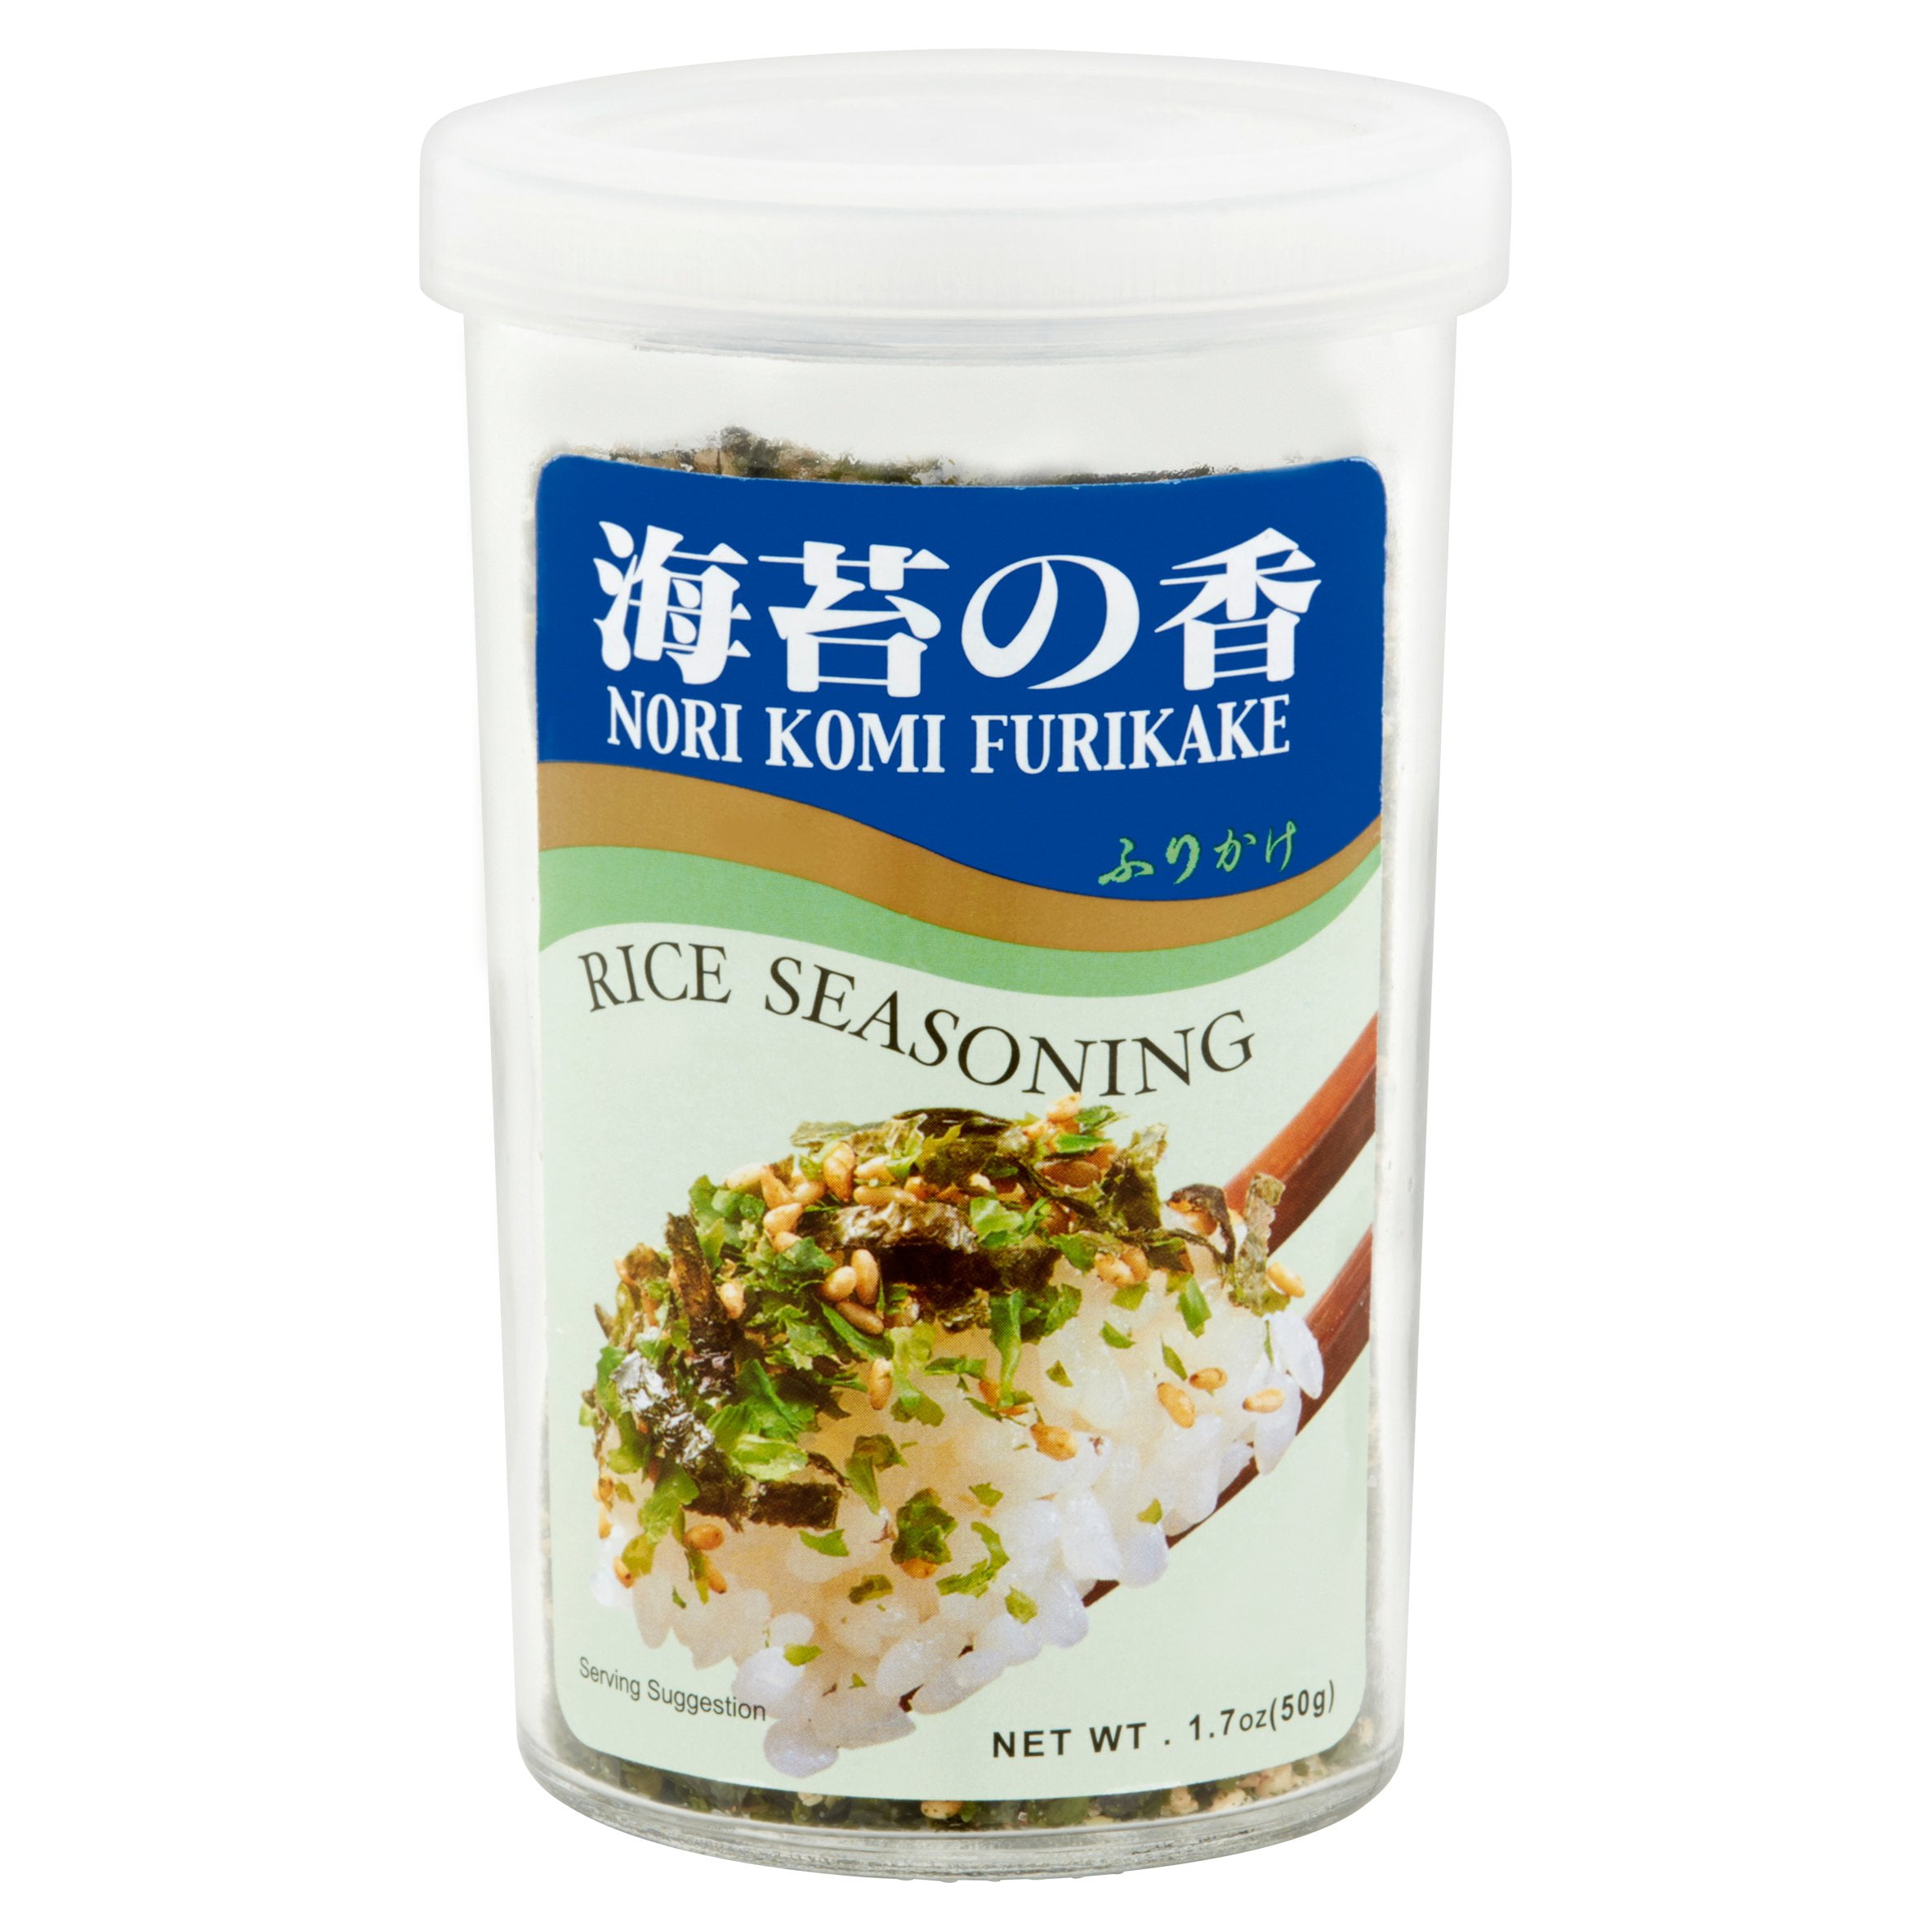 JFC Nori Komi Furikake Rice Seasoning, 1.7 oz